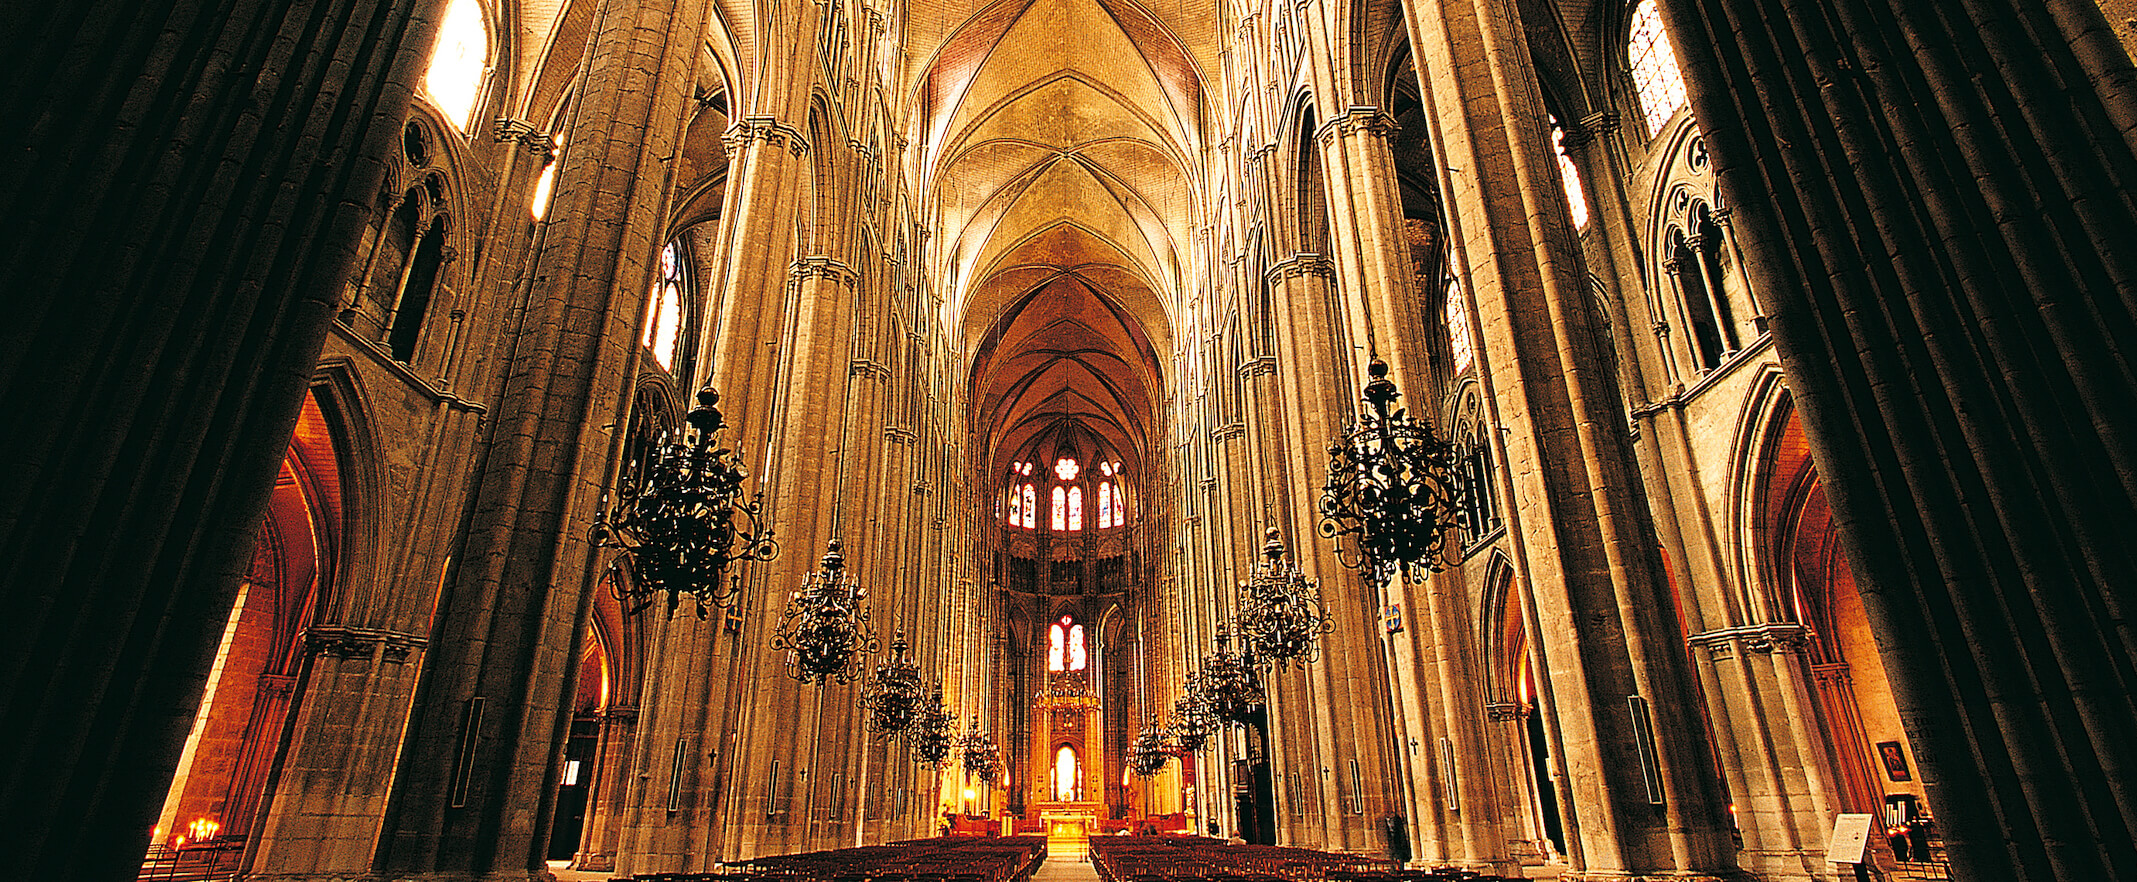 Cathédrale Saint-Etienne©ACIR / JJ Gelbart